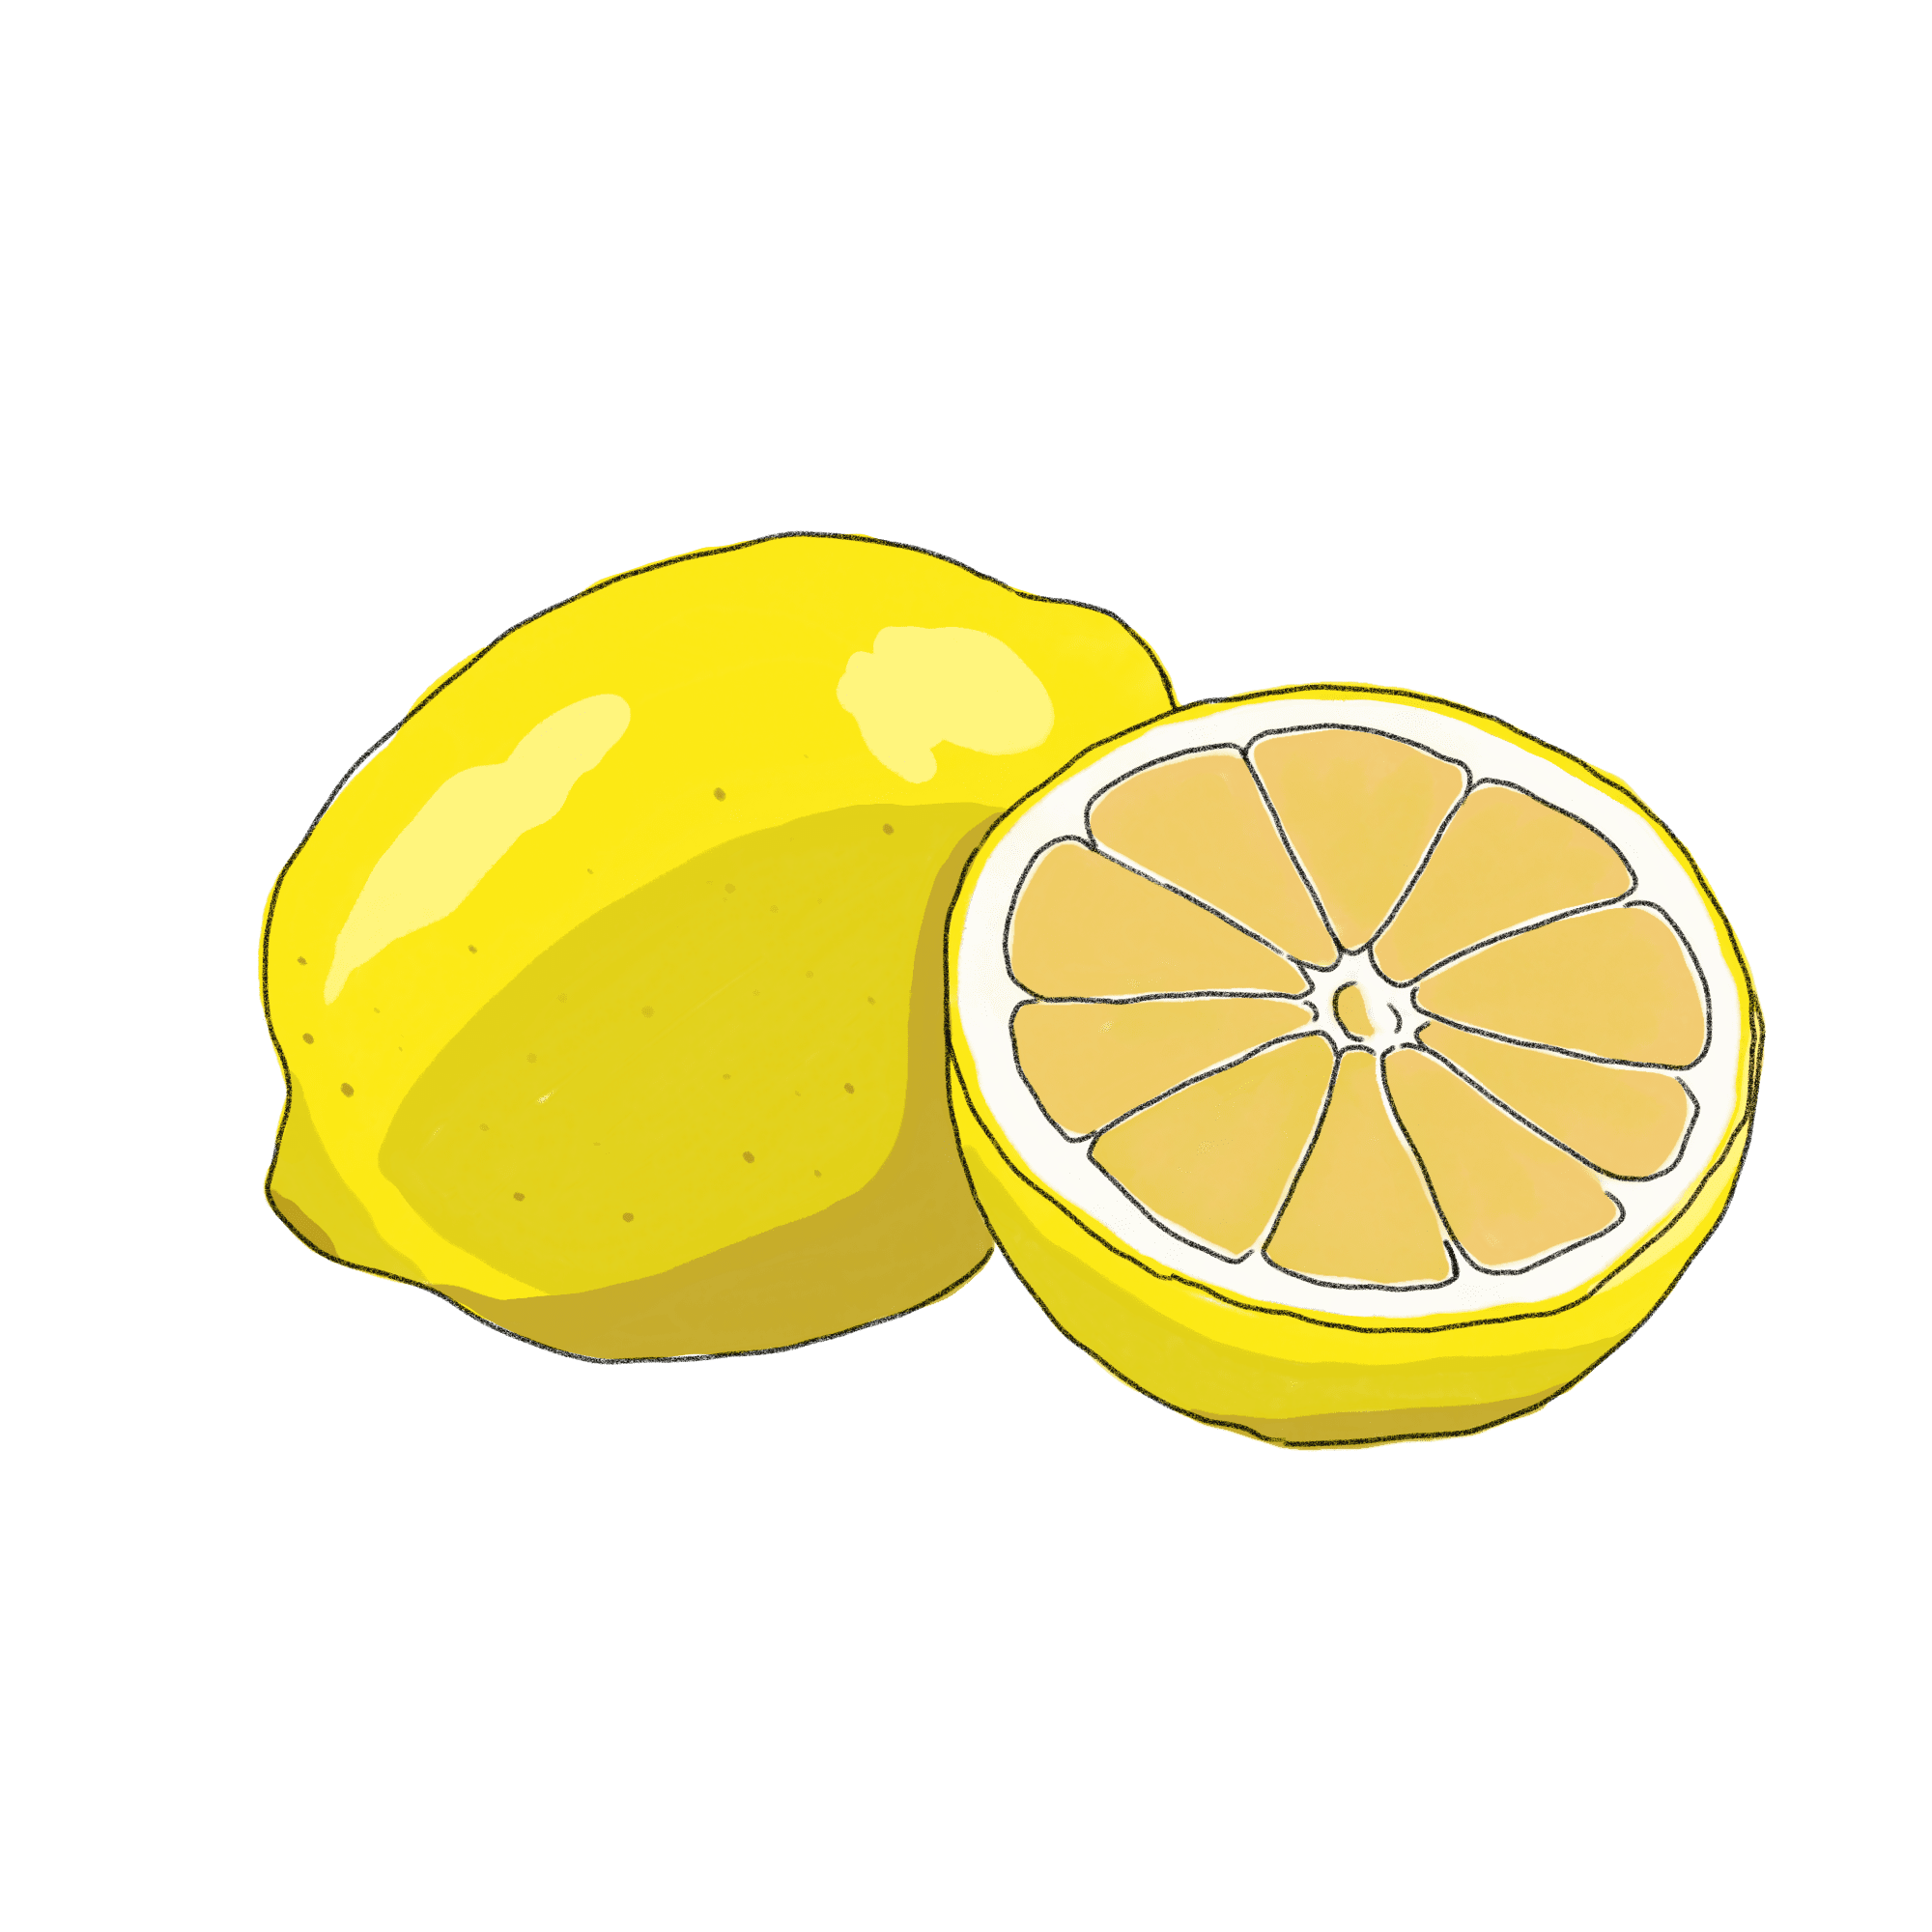 レモンのイラスト 01 フリー素材 Greenstock40